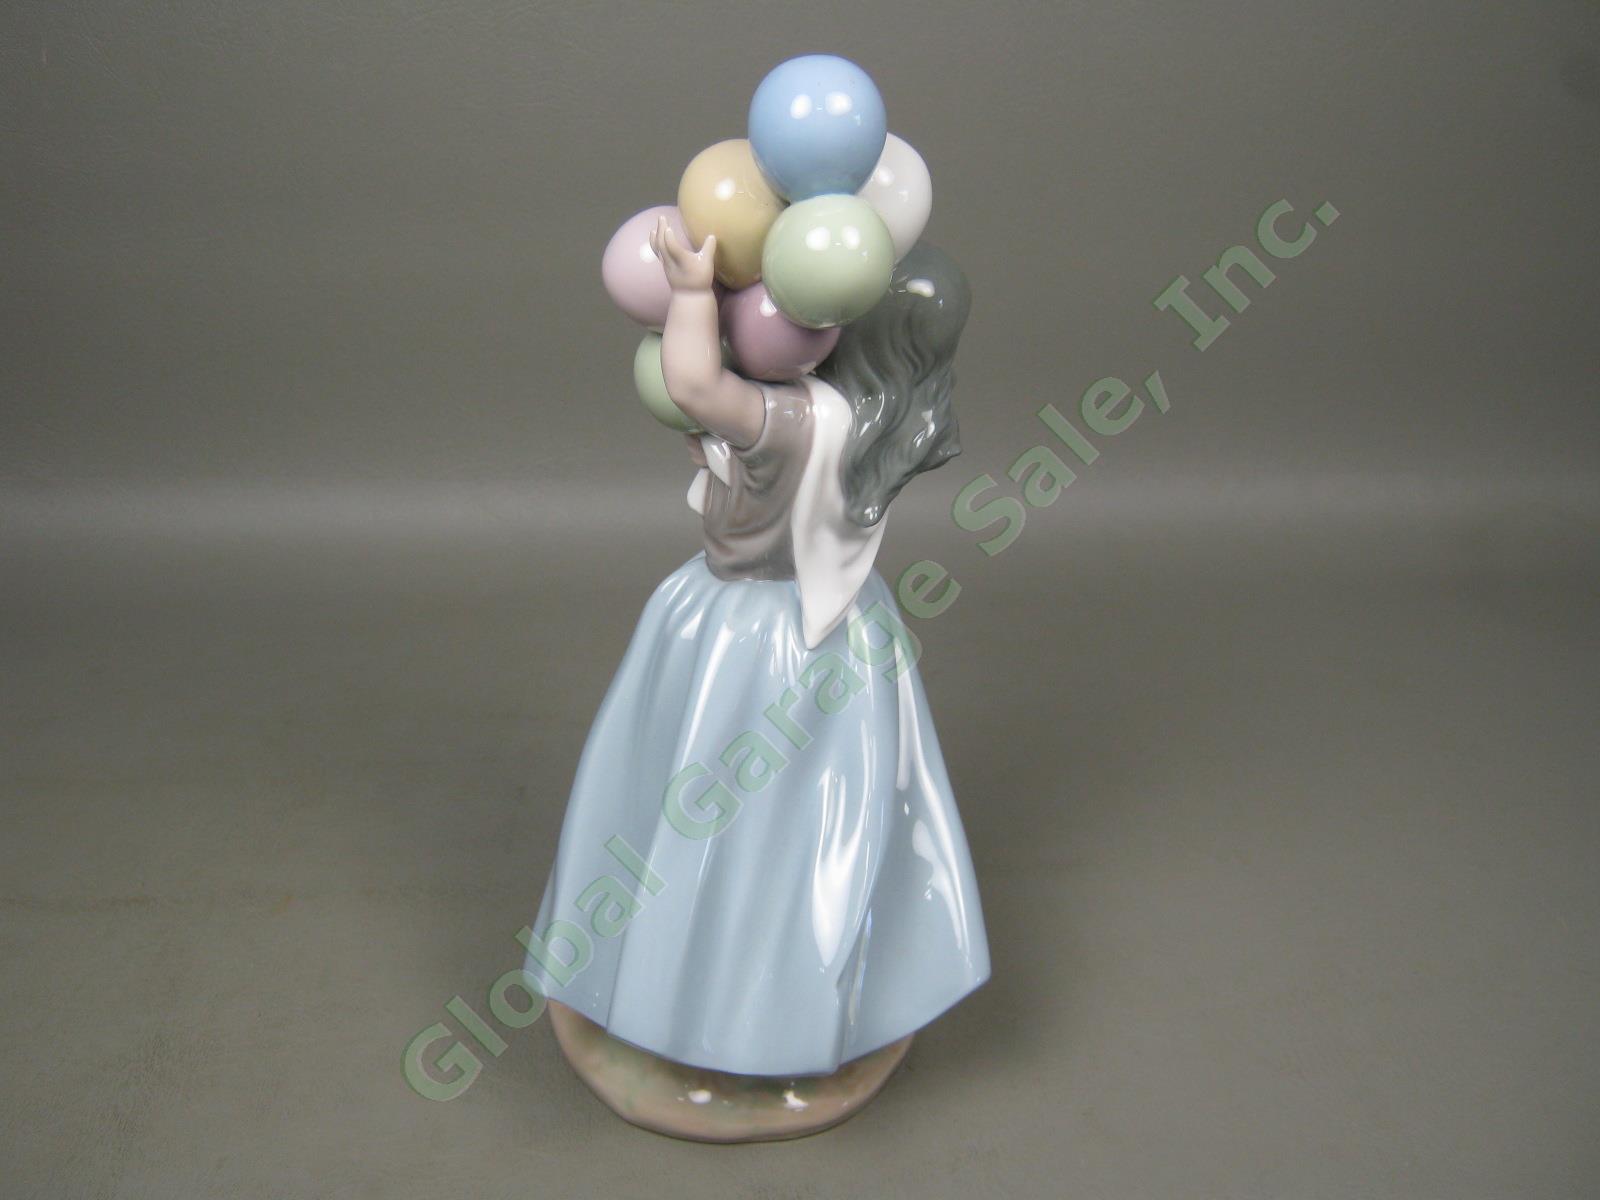 Vtg Retired Lladro Glossy Glazed Porcelain Balloon Seller Girl Figurine 10" 5141 2